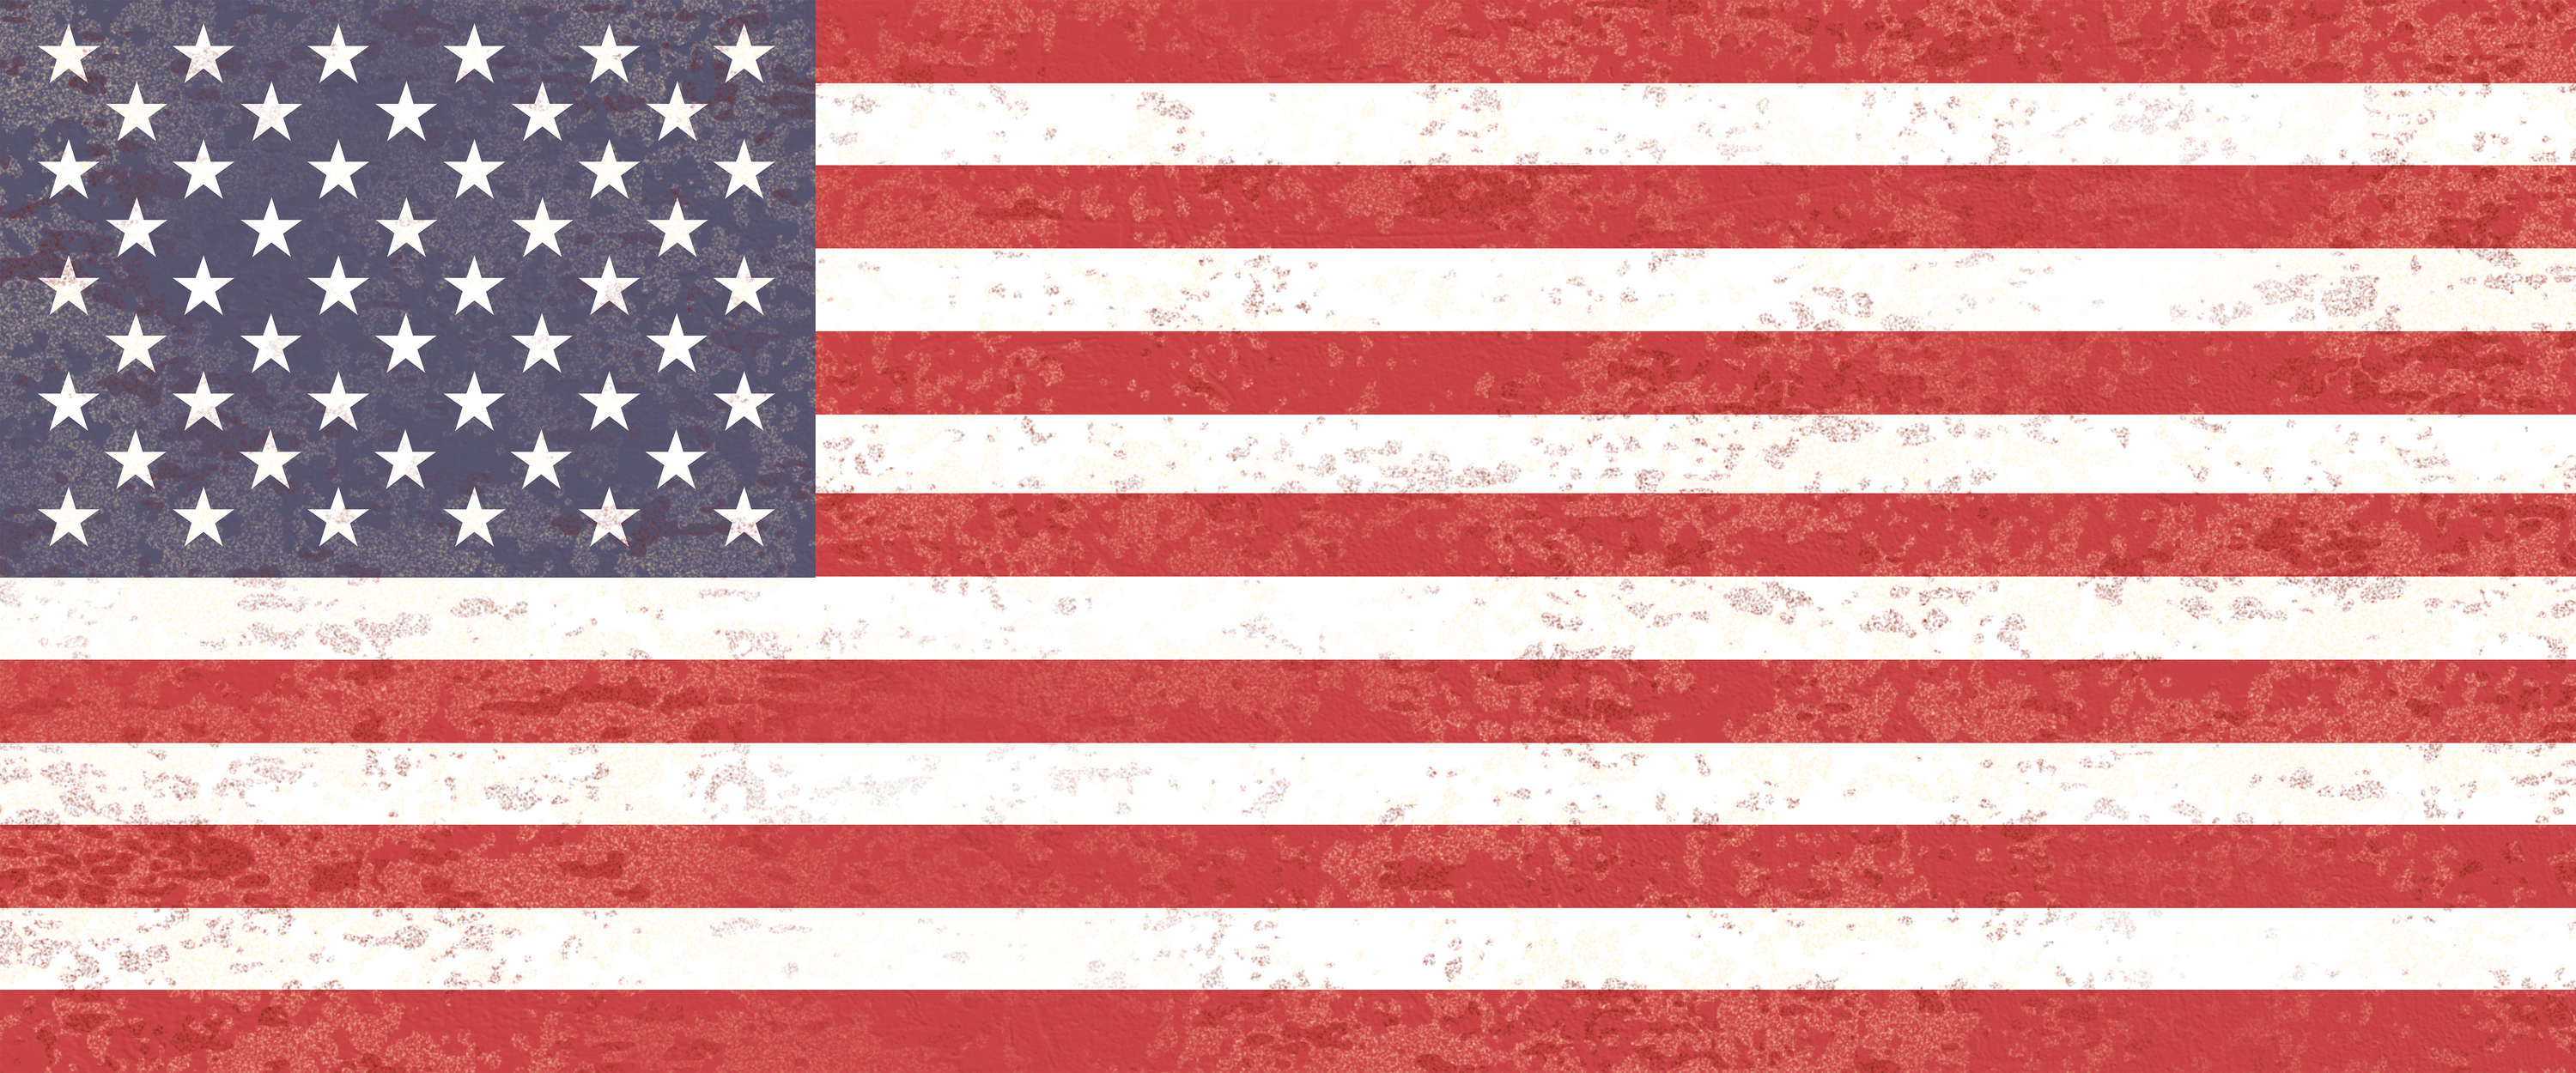             Papel Pintado Bandera Americana - Estrellas y Rayas
        